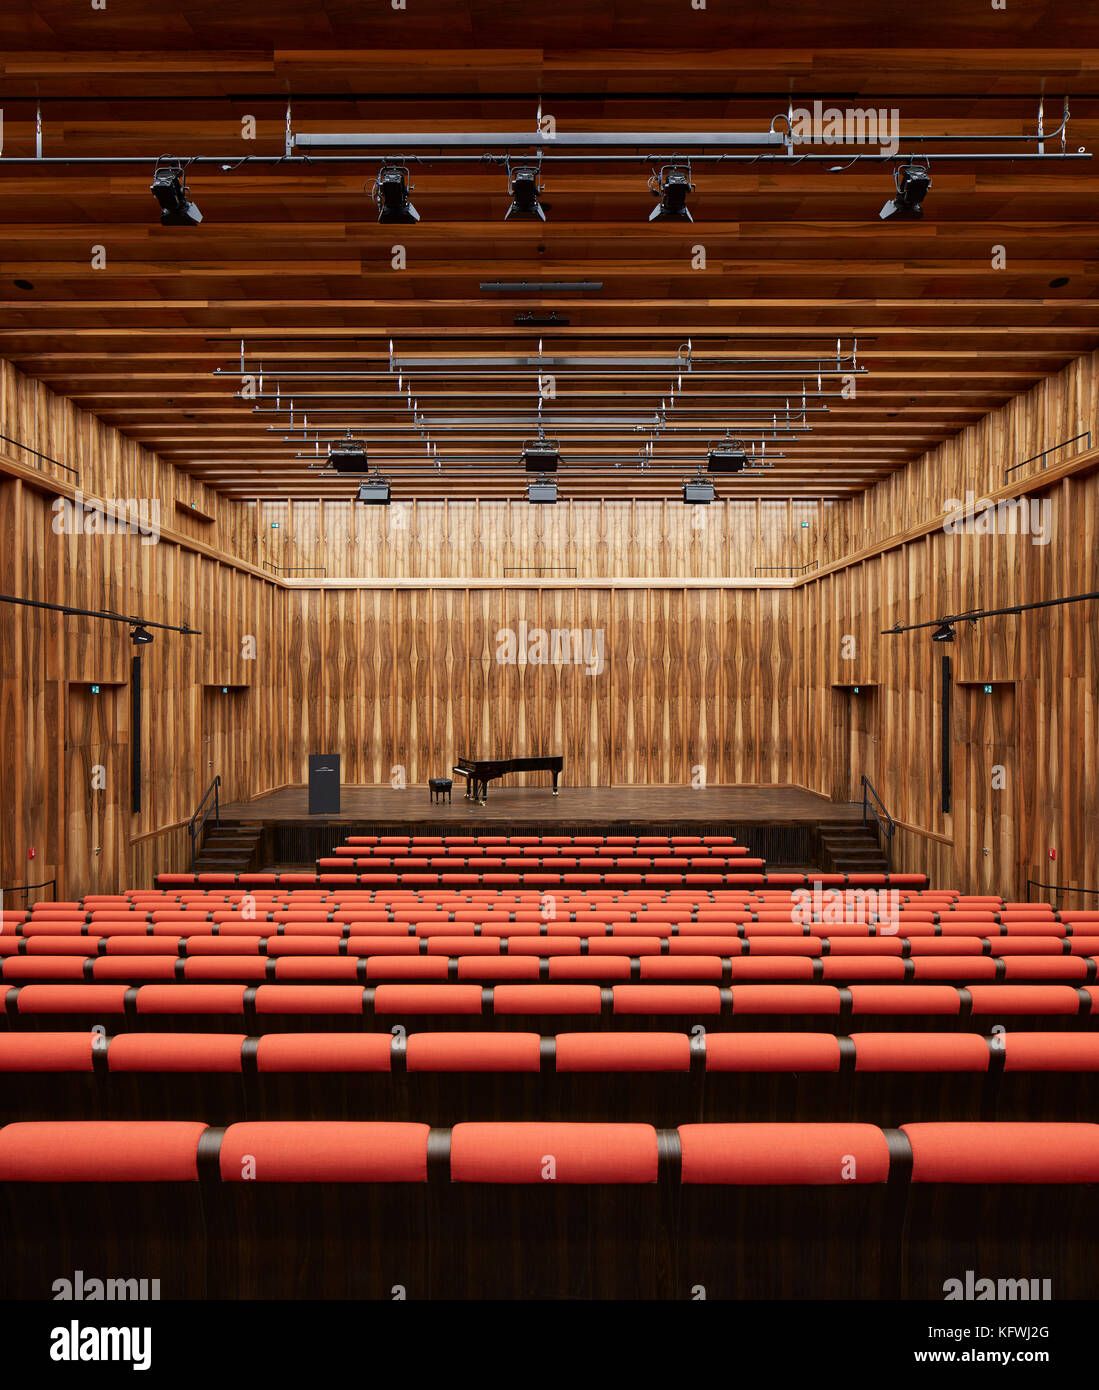 Salle de musique de chambre. Carmen Würth Forum, Künzelsau-Gaisbach, Allemagne. Architecte : David Chipperfield Architects Ltd, 2017. Banque D'Images